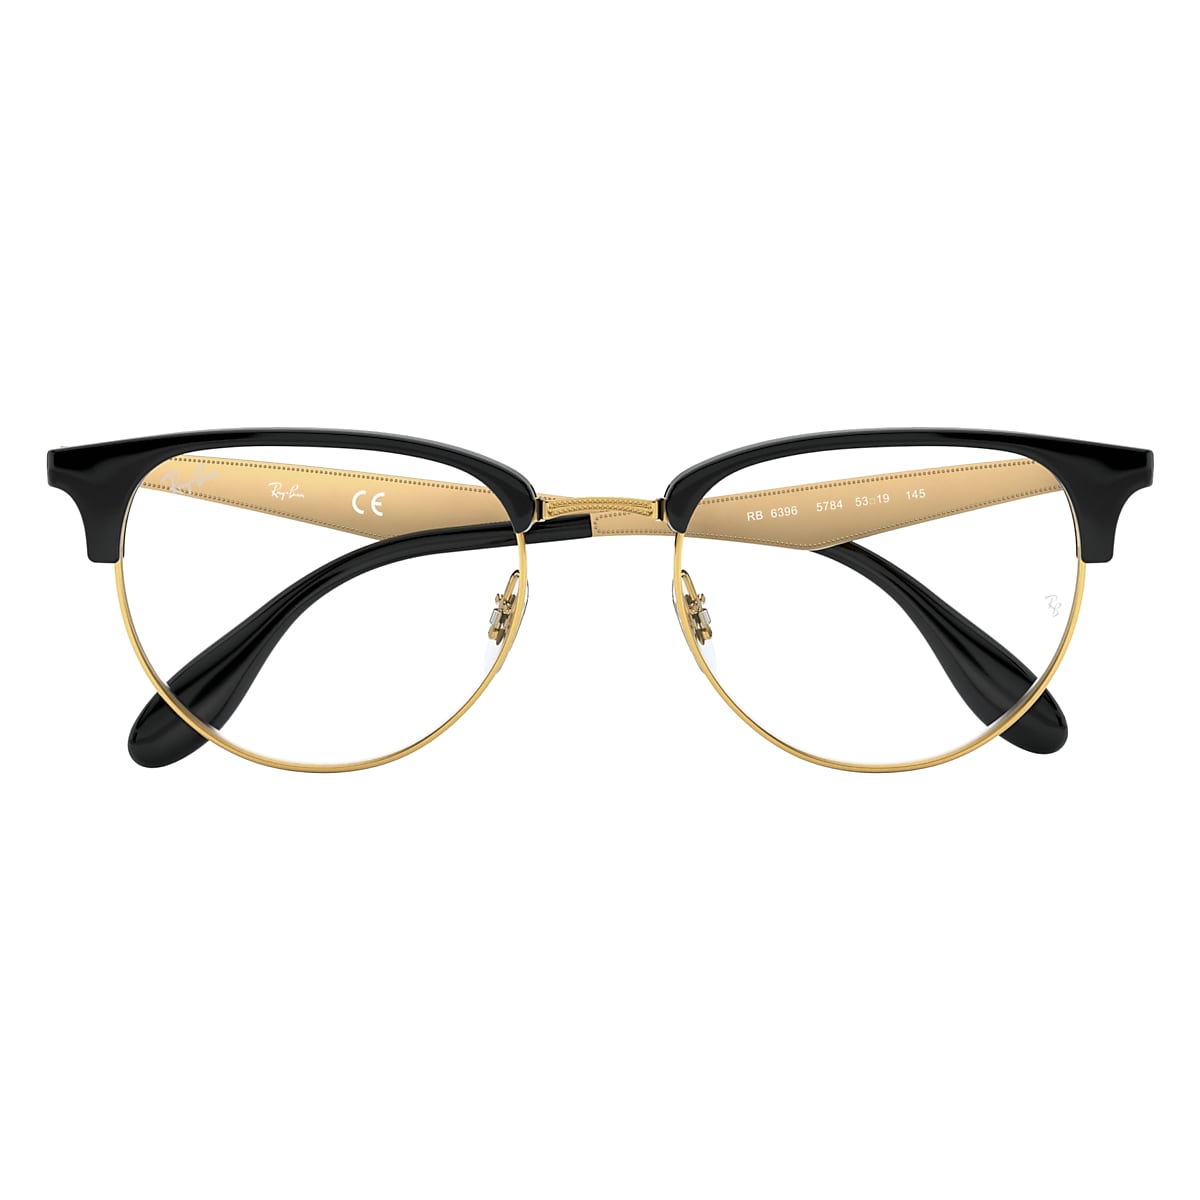 Ray-Ban Gold Eyeglasses, ®